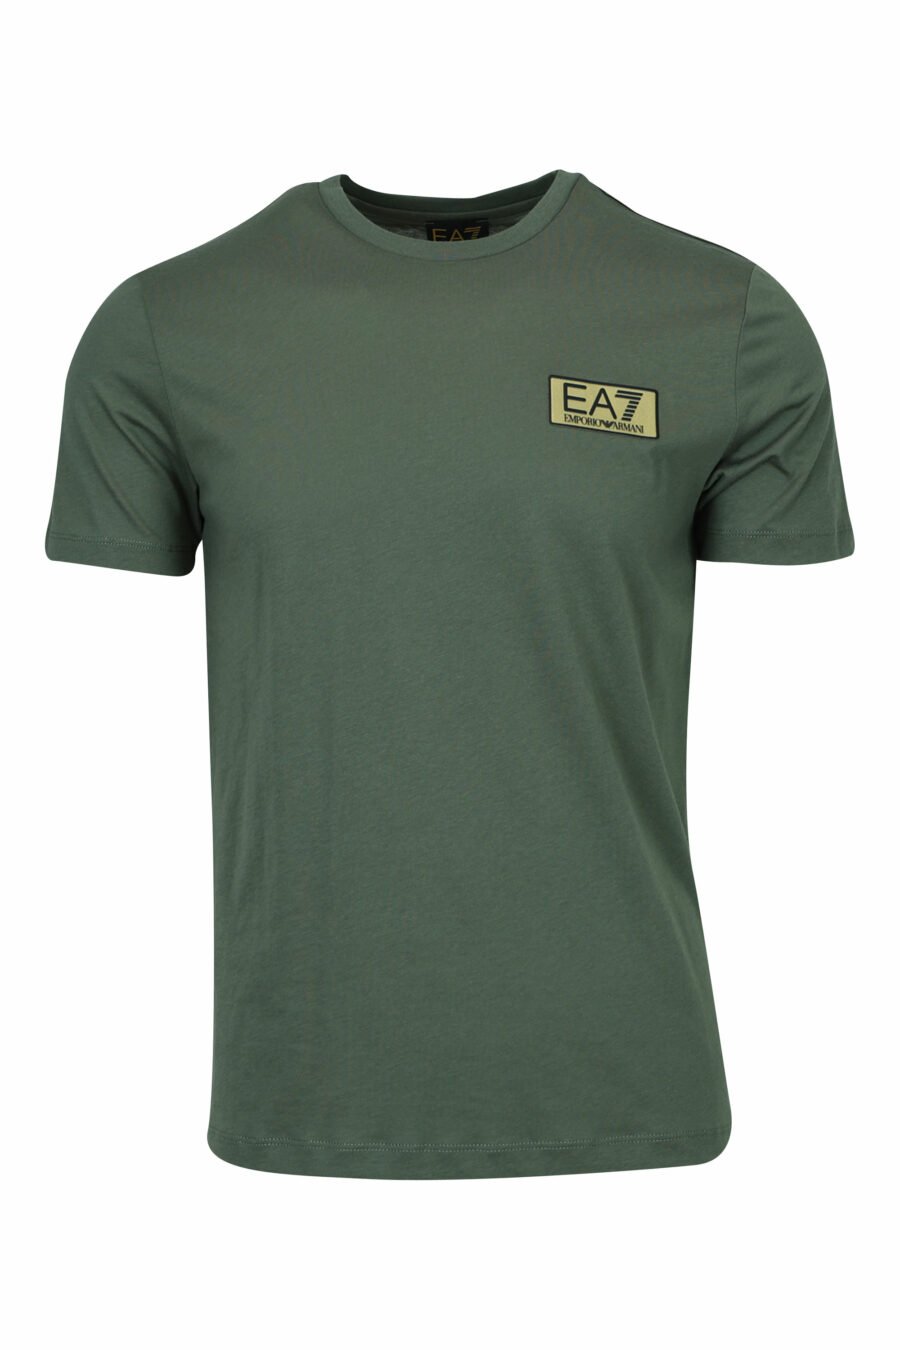 Grünes T-Shirt mit schwarzem Minilogo "lux identity" auf Goldplatte - 8058947475506